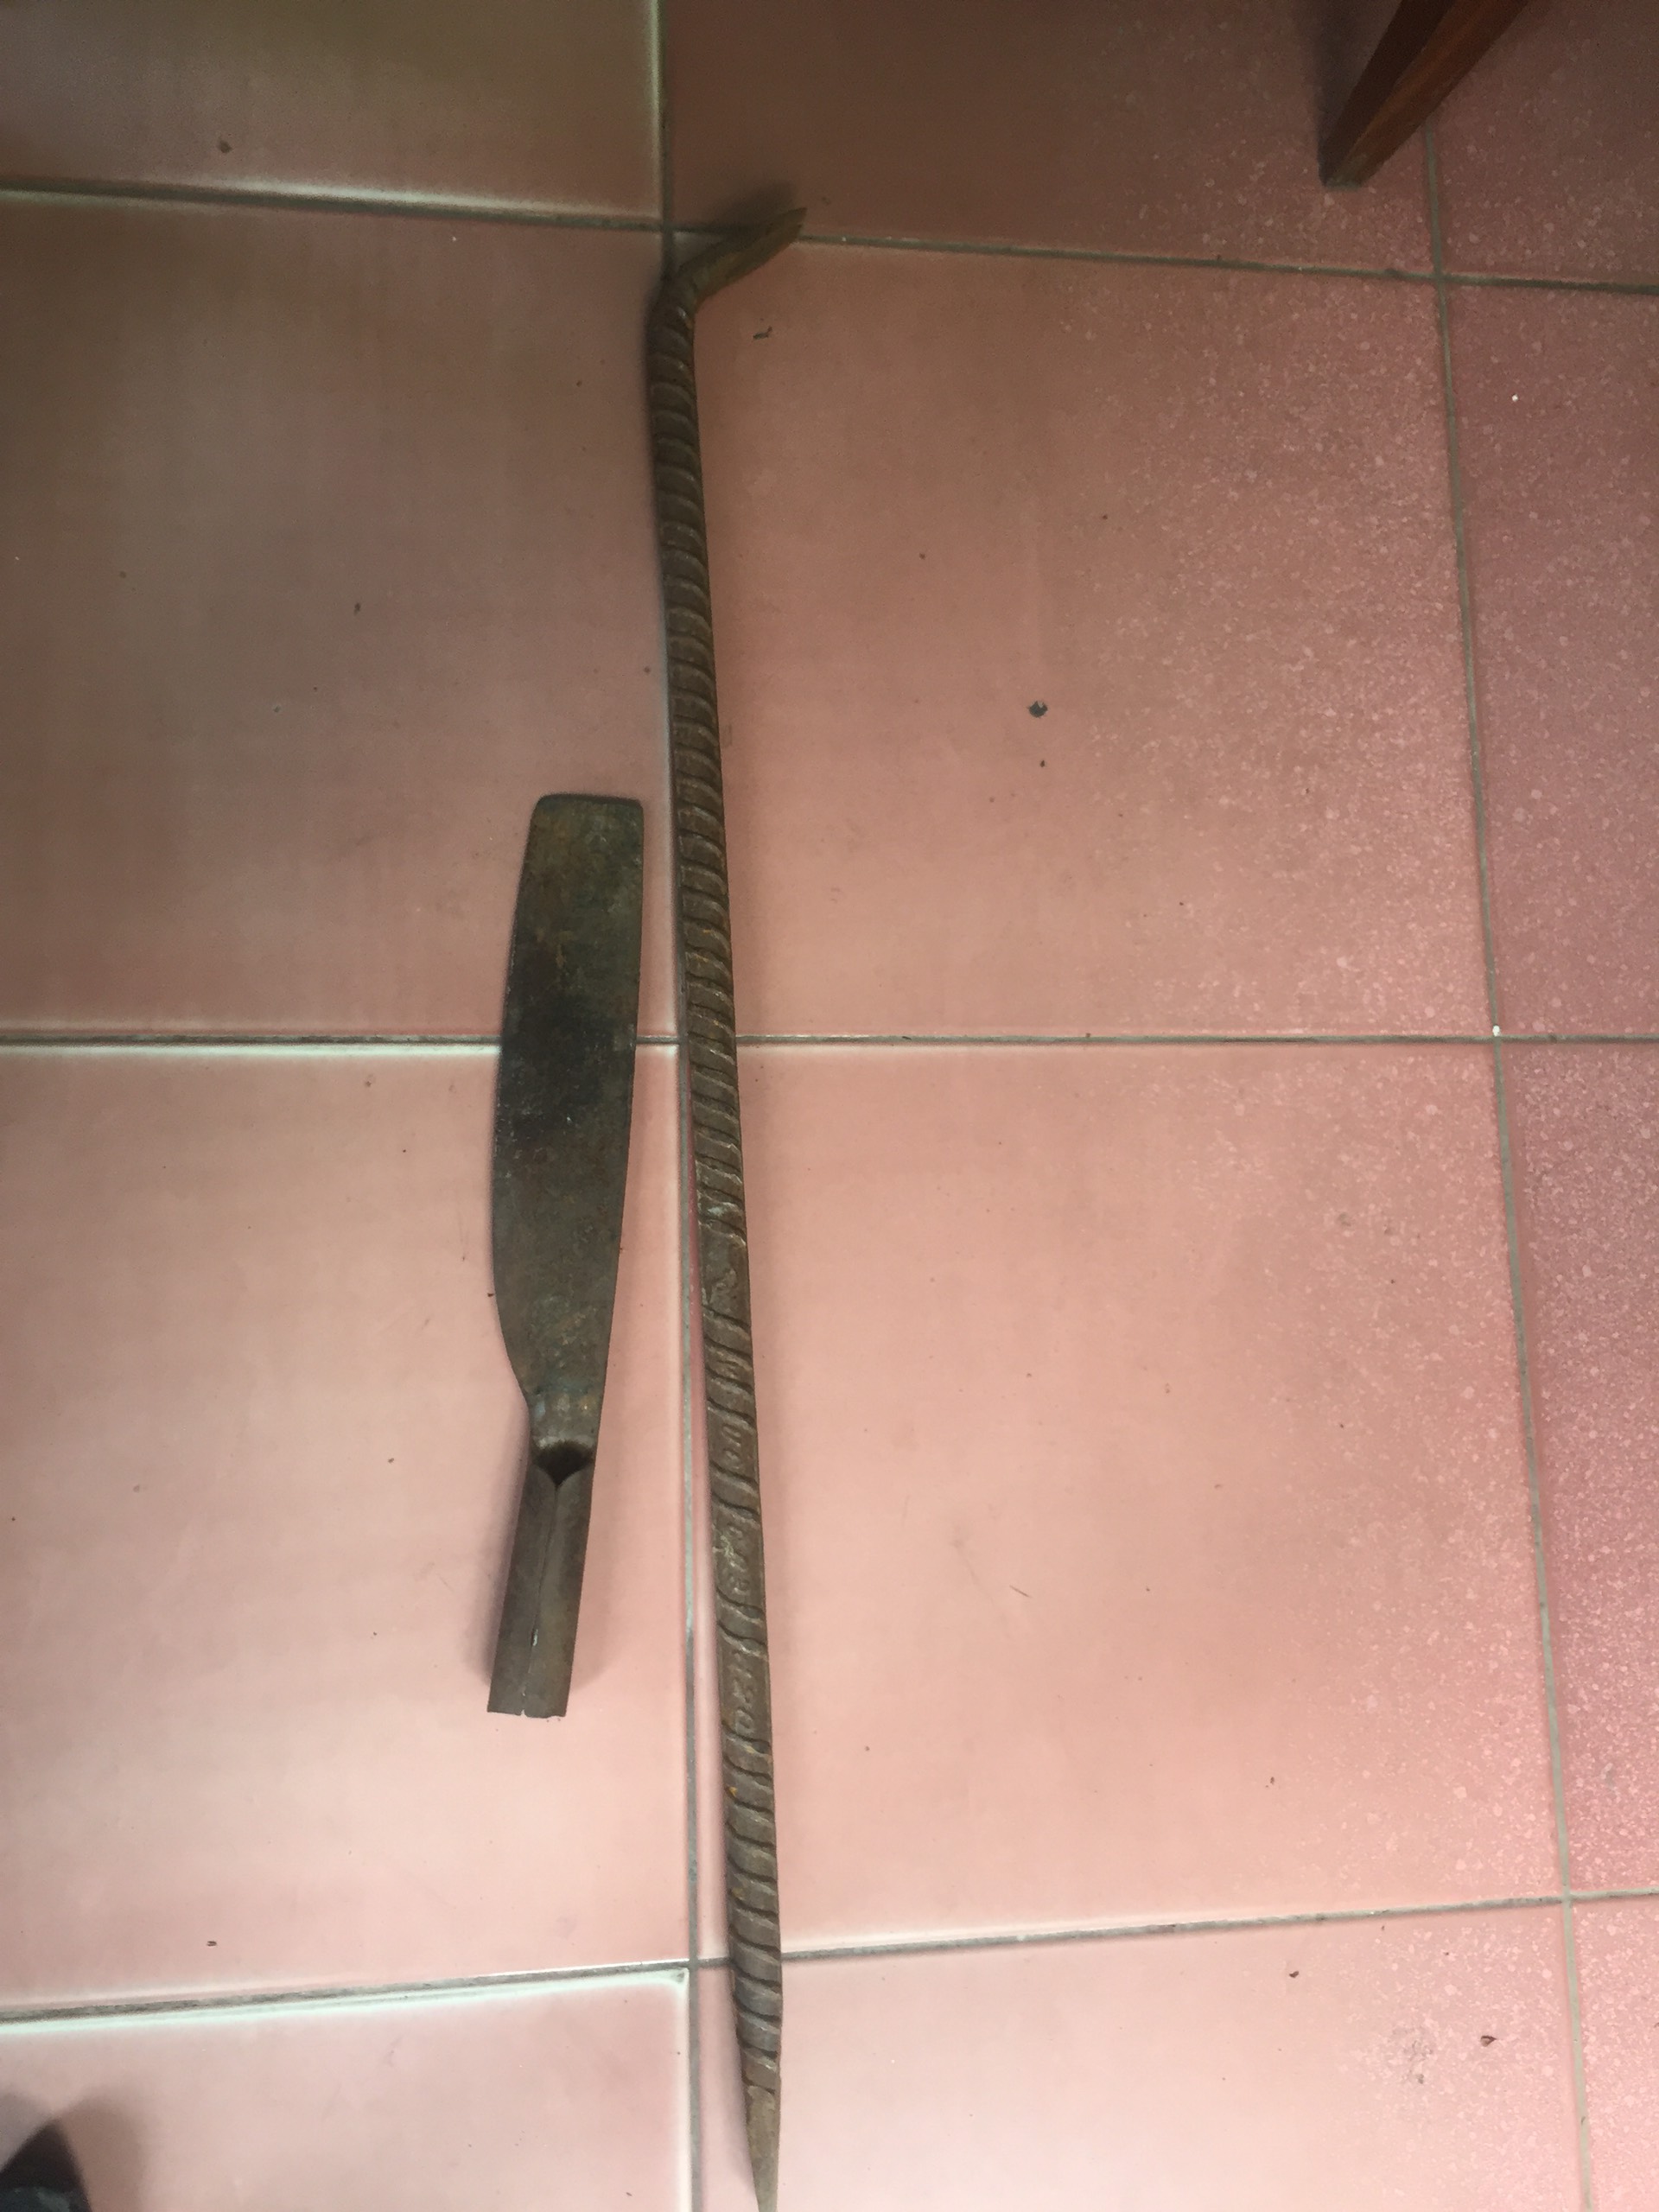 Xac beng và dao của đối tượng Hà Văn Tú dùng để phá két sắt 